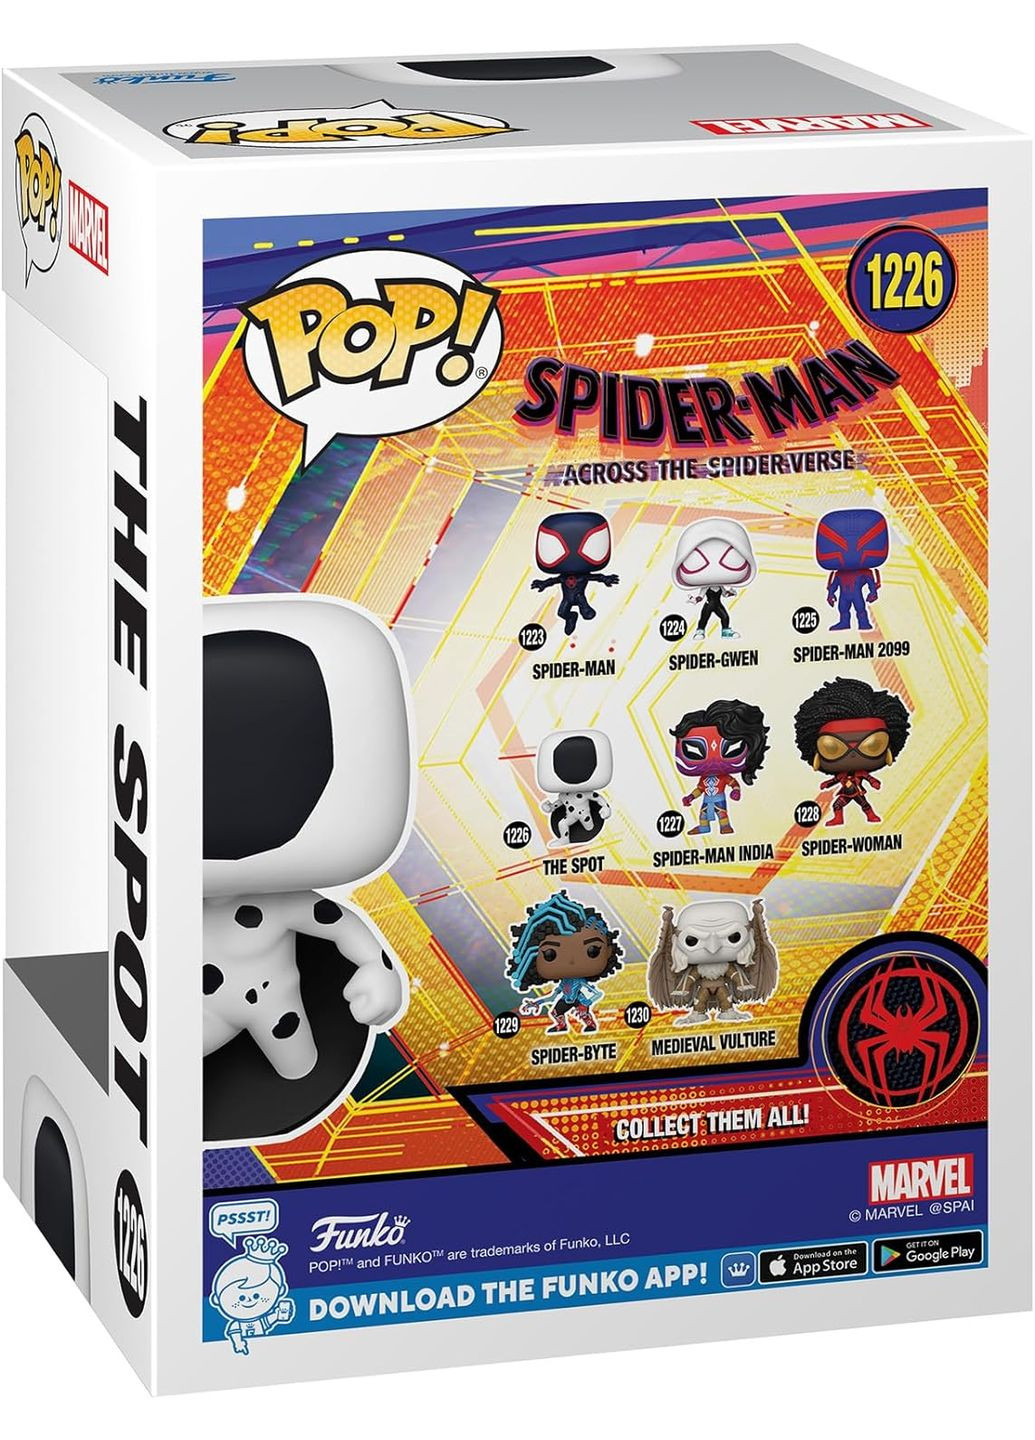 Спайдер мен фігурка Marvel Фанко Spider Man The Spot Пляма дитяча ігрова фігурка #1226 Funko Pop (293850629)